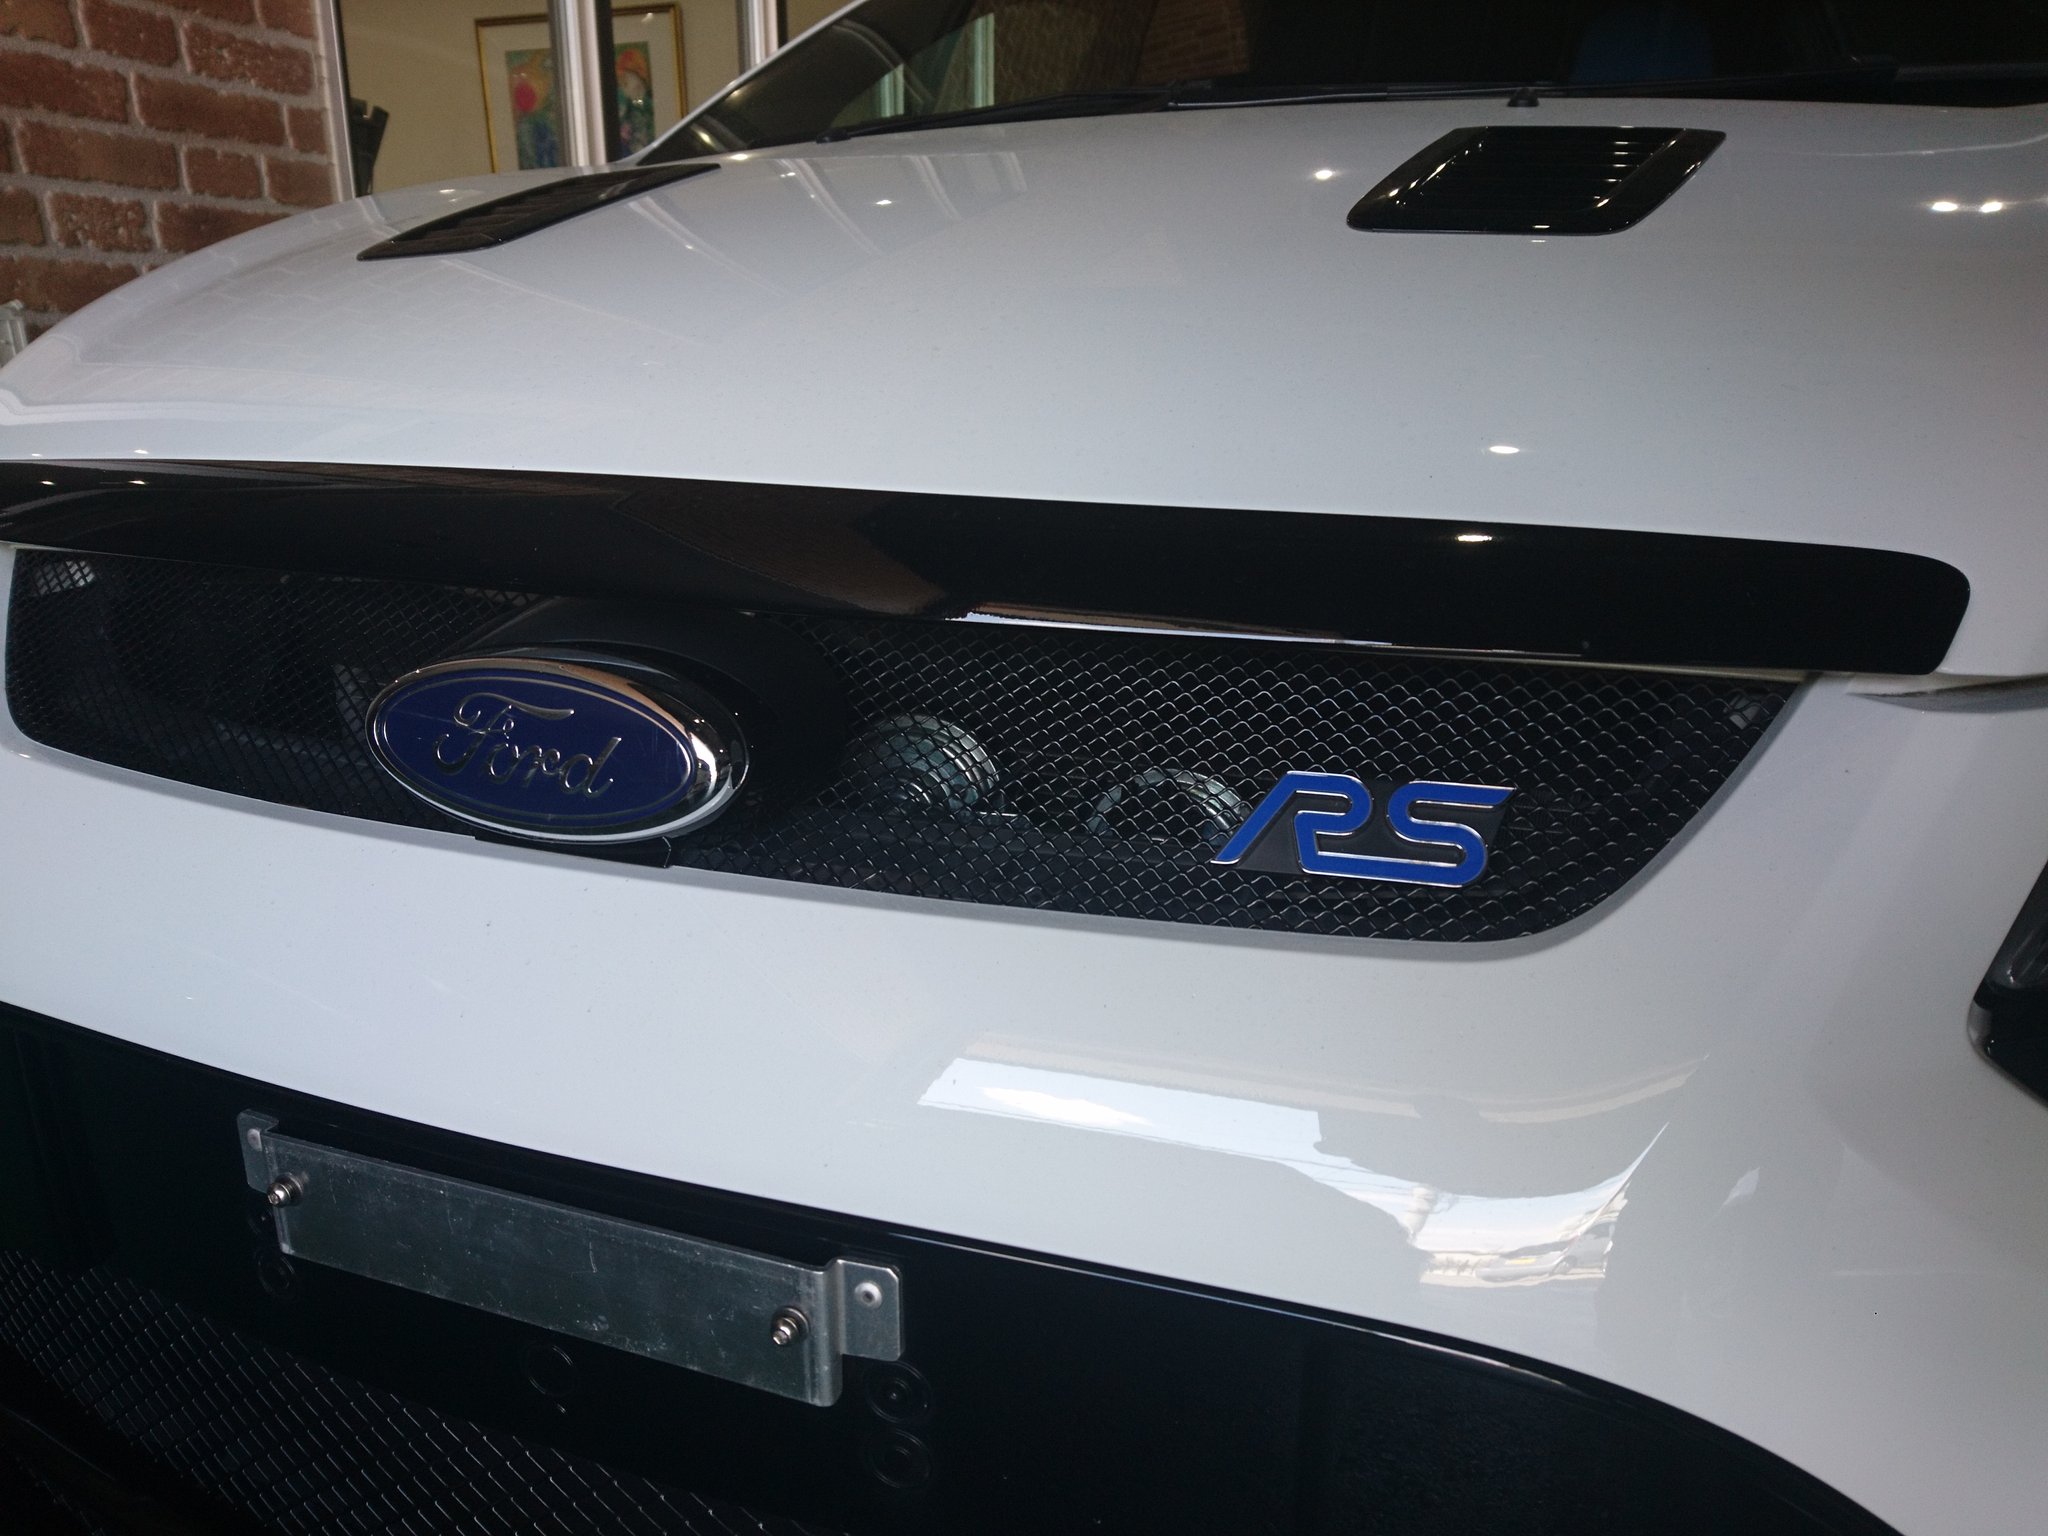 Ymワークス Ford Focus Rs フォードフォーカスrs ホワイトボディにブルーの Rs ロゴが映えますね Ymワークス Ford Fordfocusrs フォードフォーカスrs